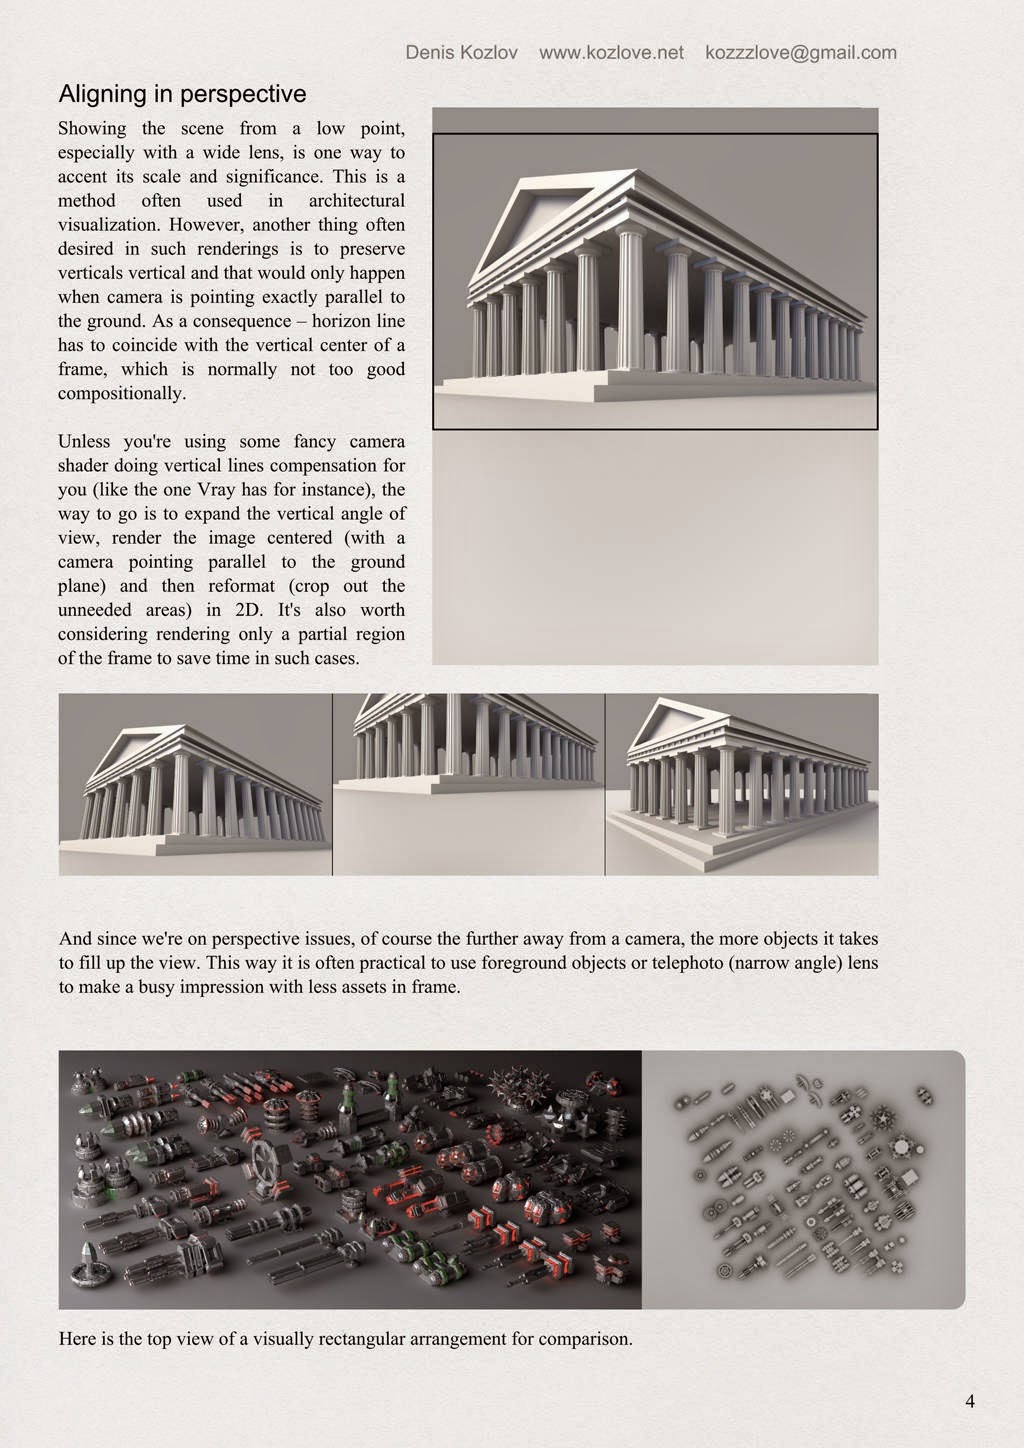 Anatomy of a CG camera by Denis Kozlov - page 4